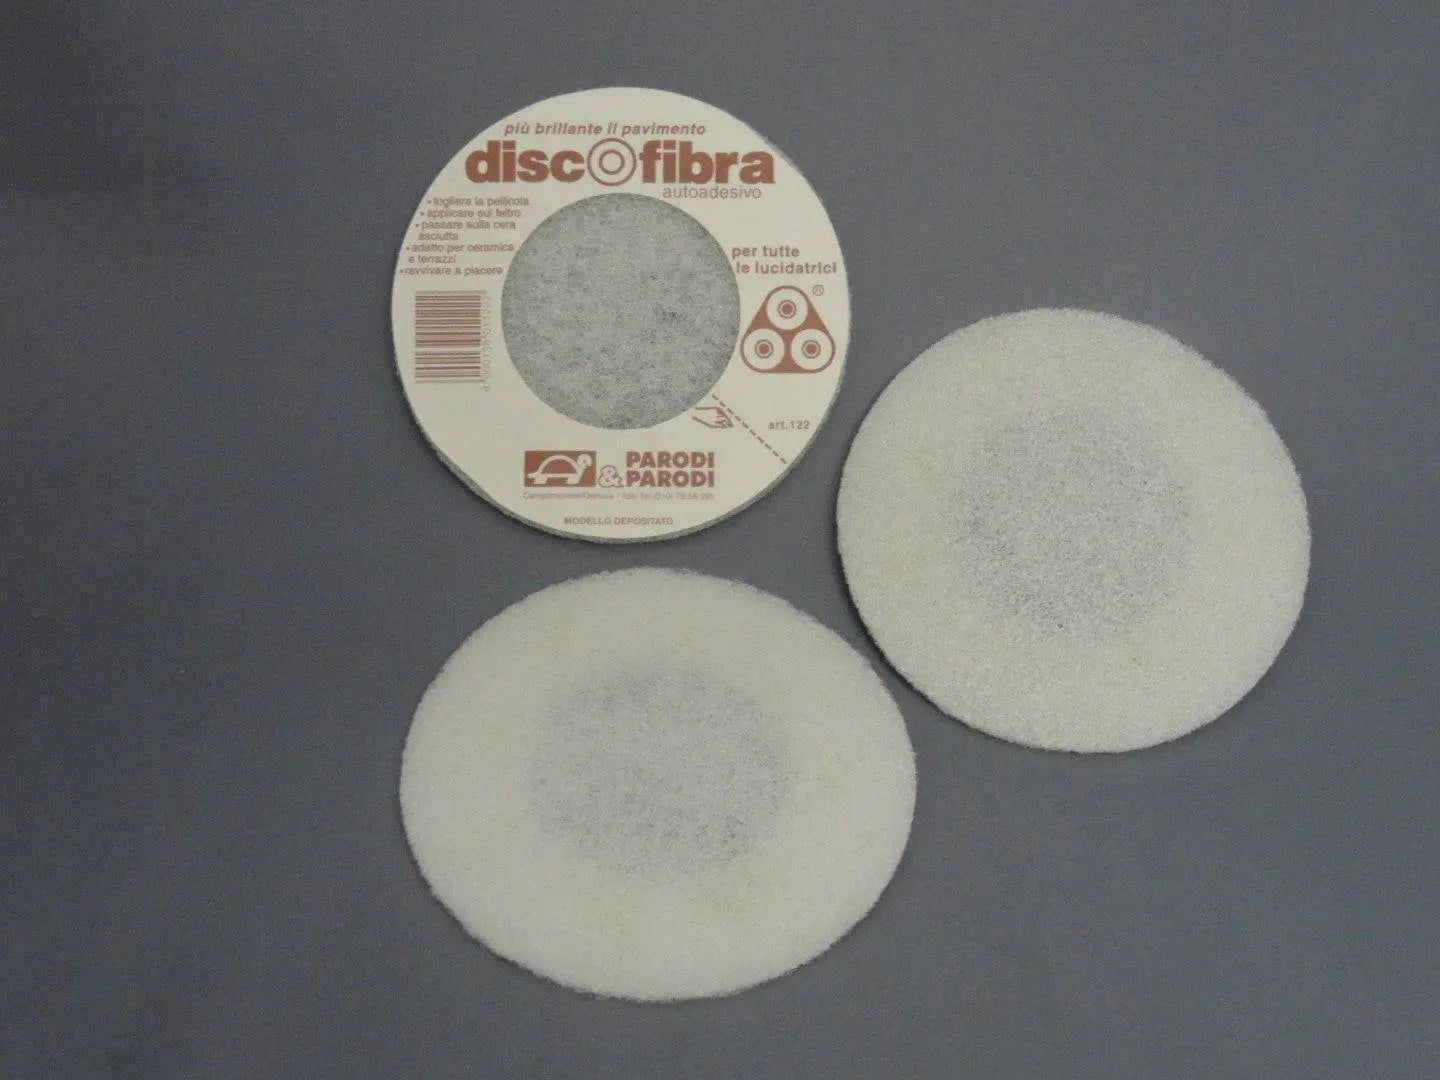 disco fibra adesivo per lucidatrice PARODI & PARODI